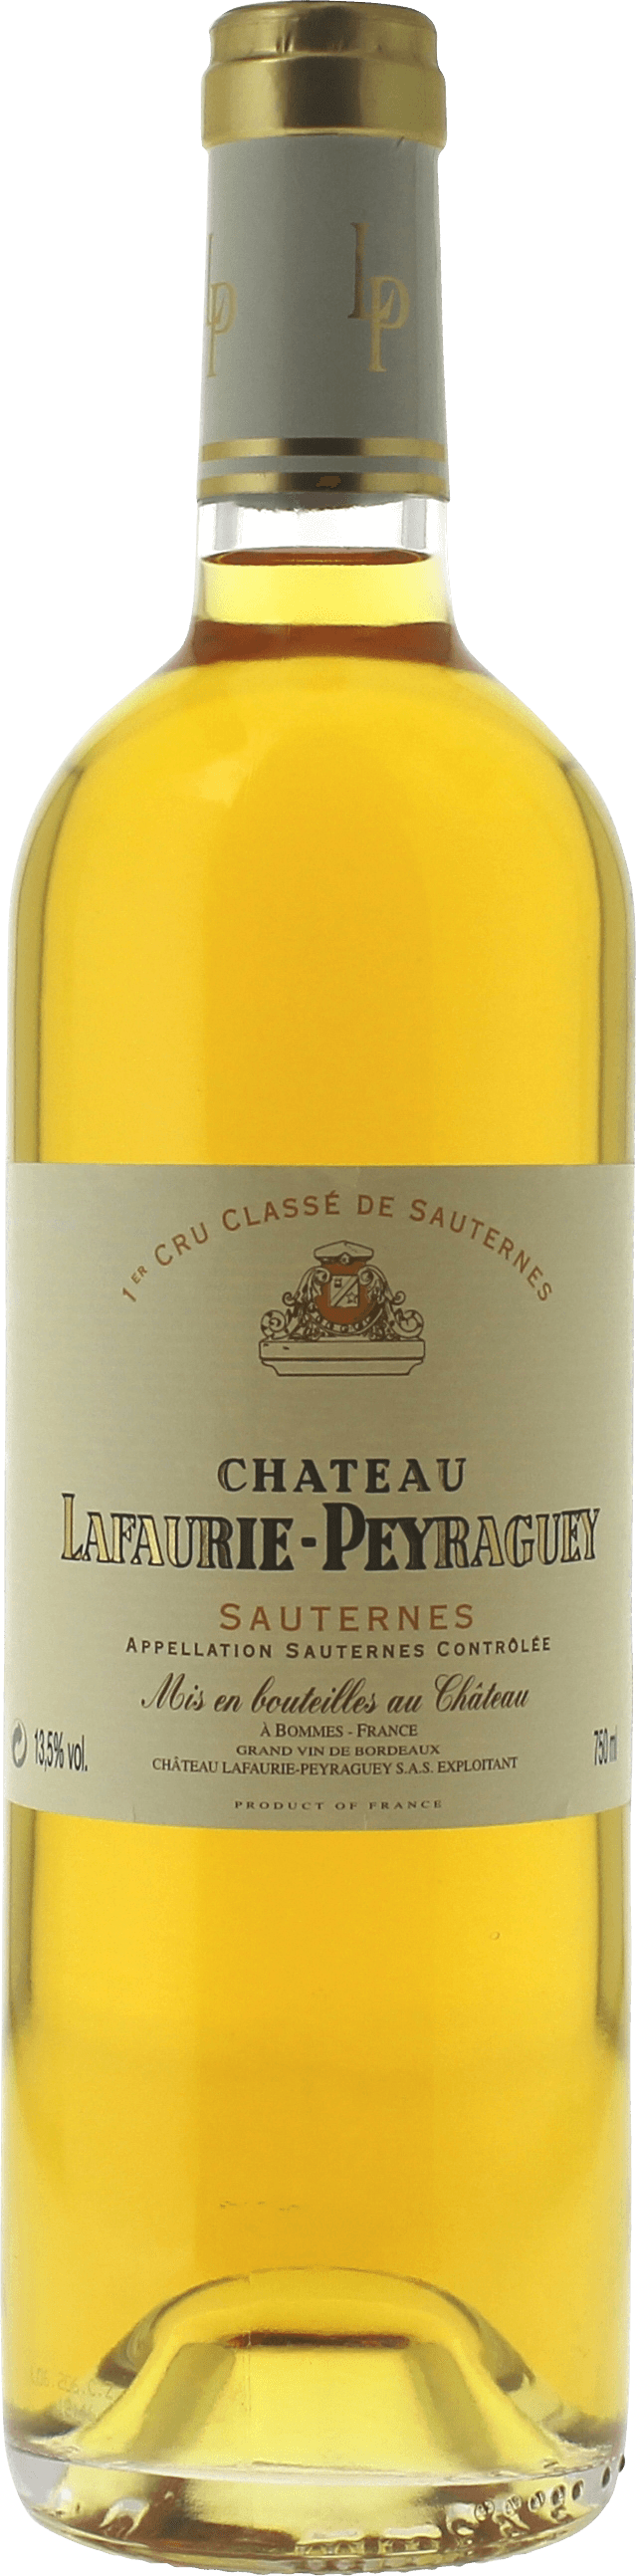 Lafaurie peyraguey 2000  Sauternes, Bordeaux blanc